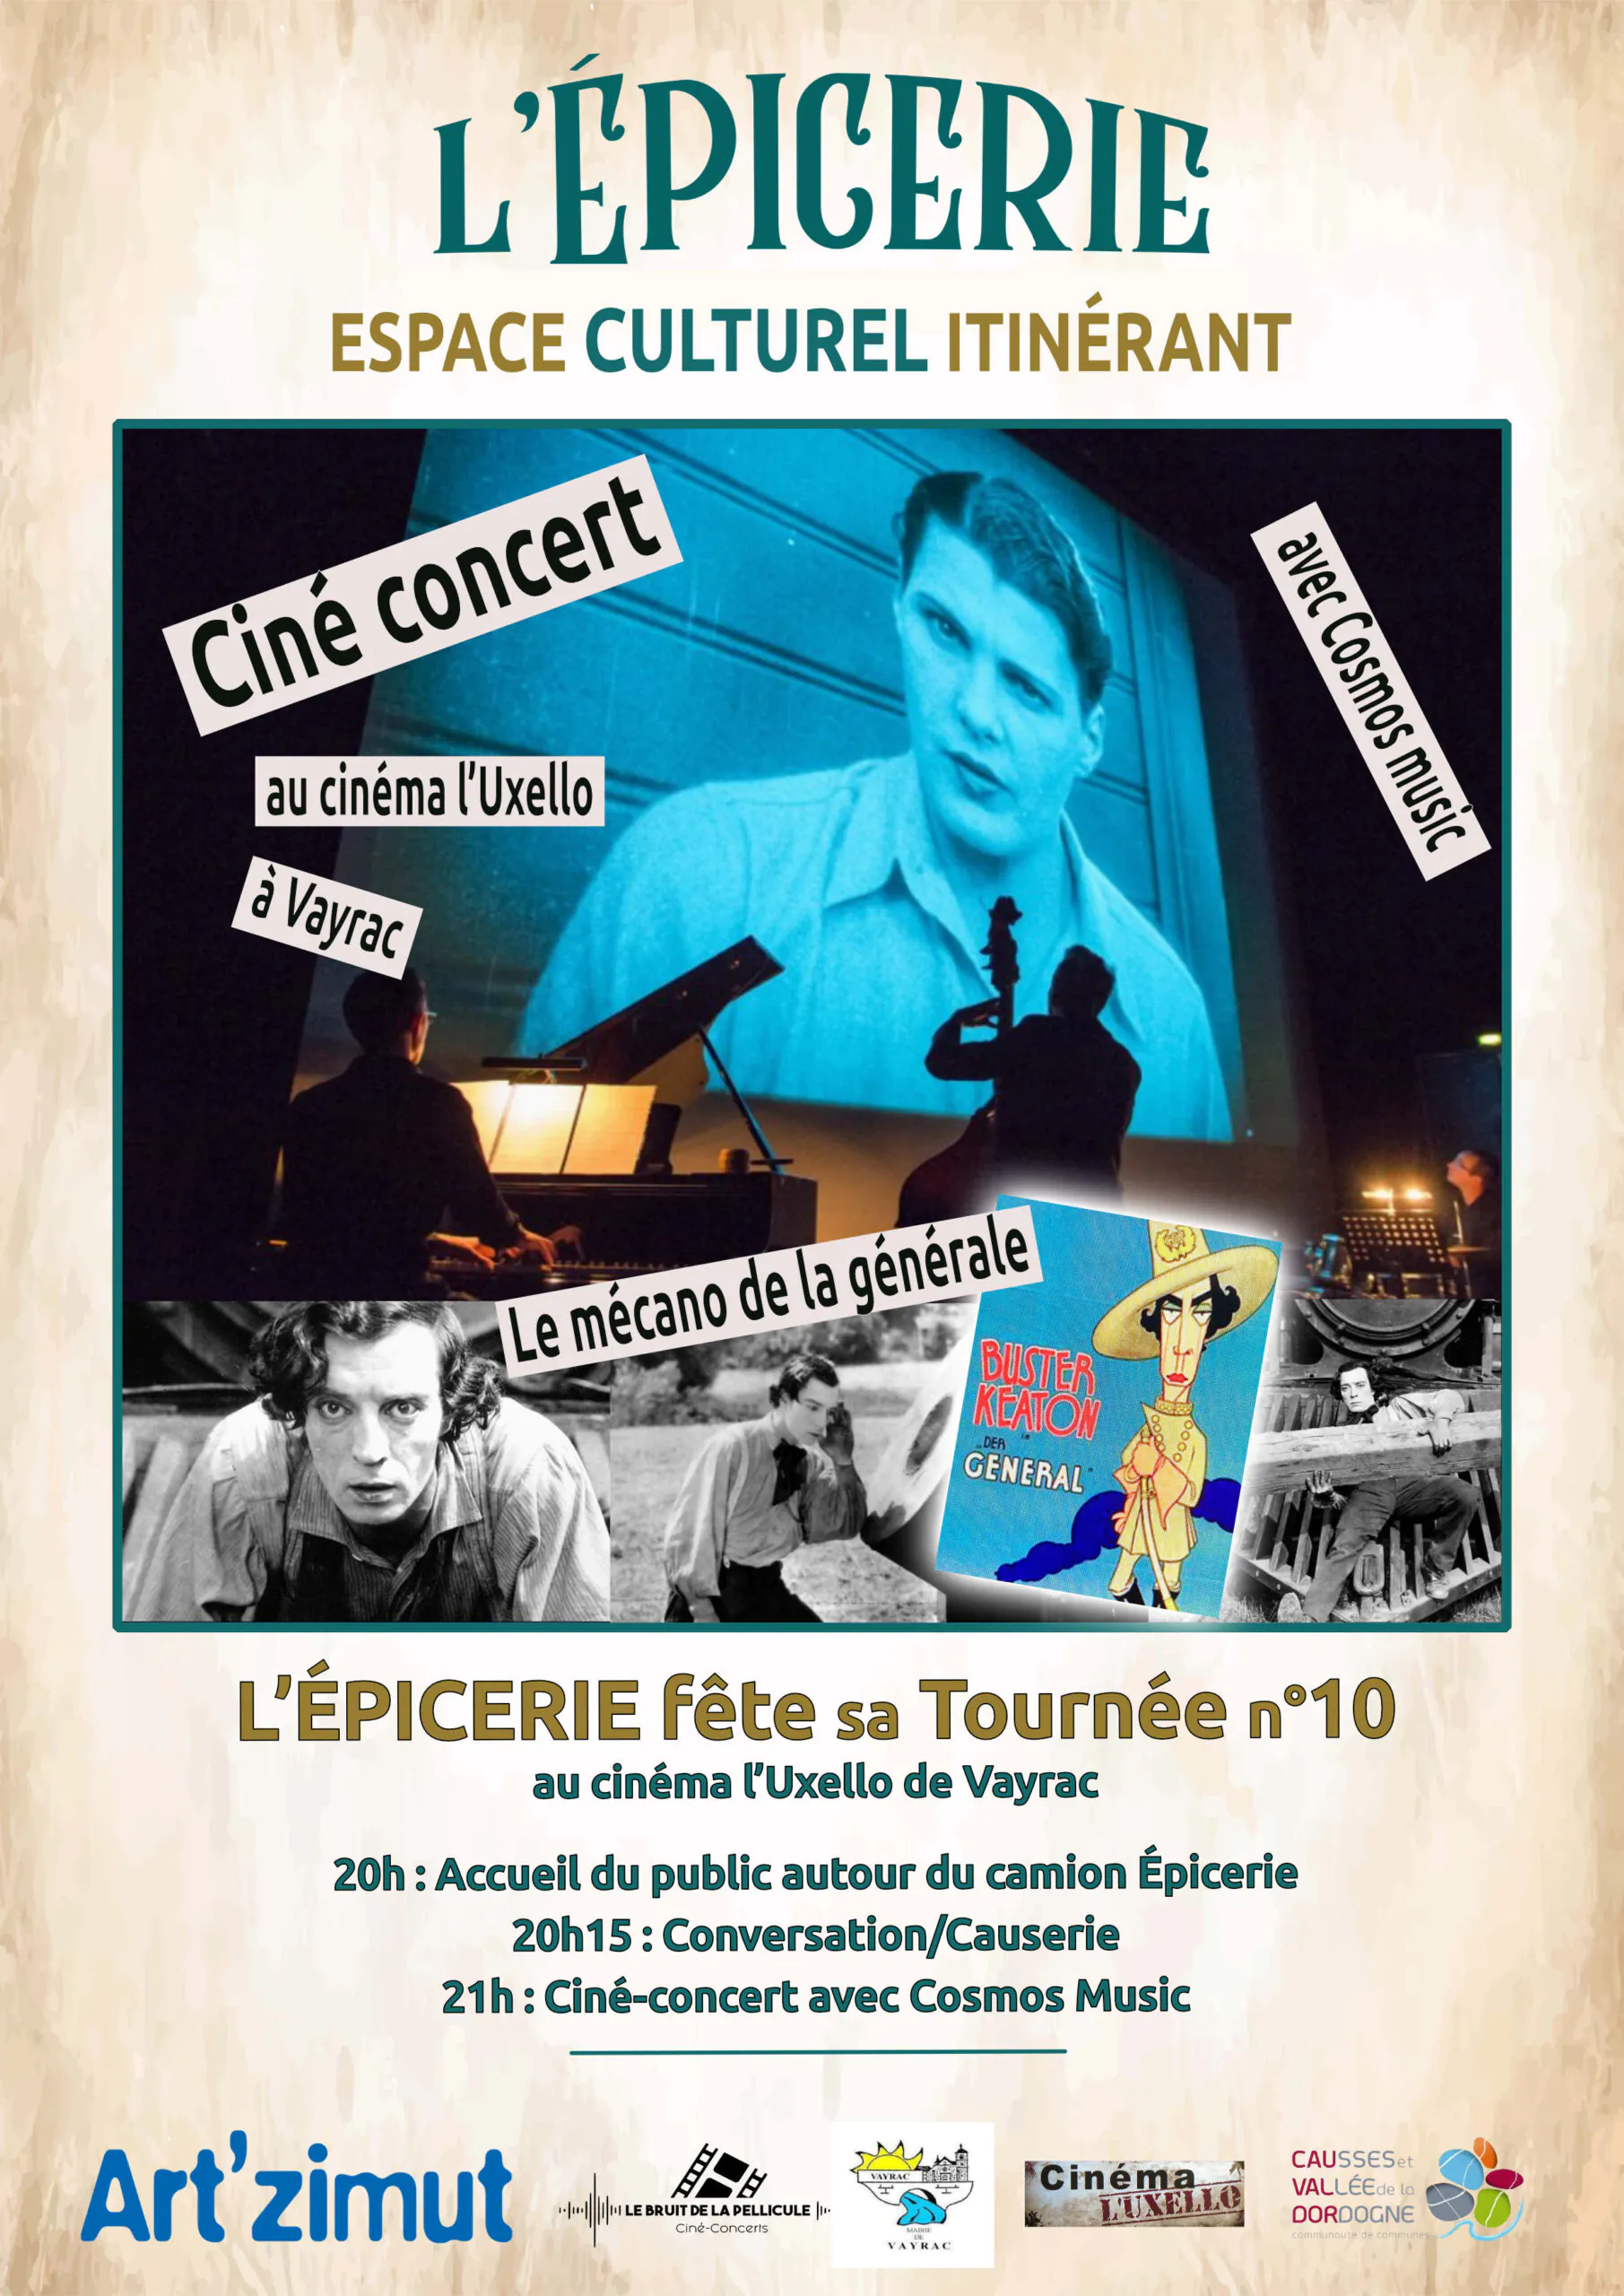 L'Epicerie Culturelle "Agnes Varda" Ciné-concert